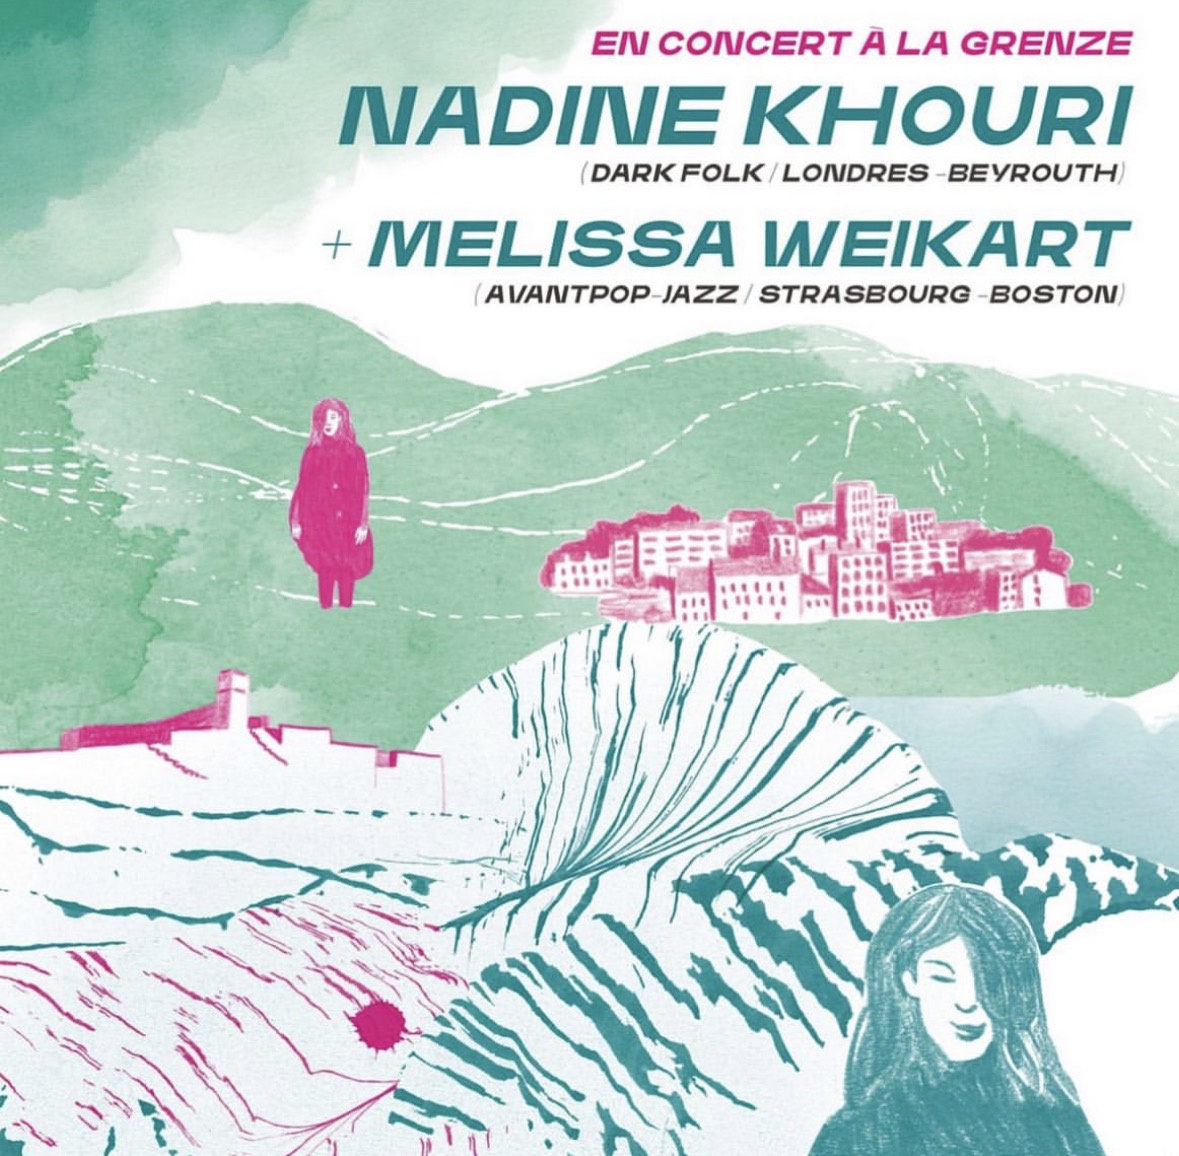 Le 1er mai, les chansons envoûtantes de @nadine_khouri résonneront à @LaGrenze Strasbourg ! La talentueuse Melissa Weikart partagera l'affiche. 🎟️ billetweb.fr/nadine-khouri-… ℹ️ facebook.com/events/1778849… Visuel : Daisy Gand